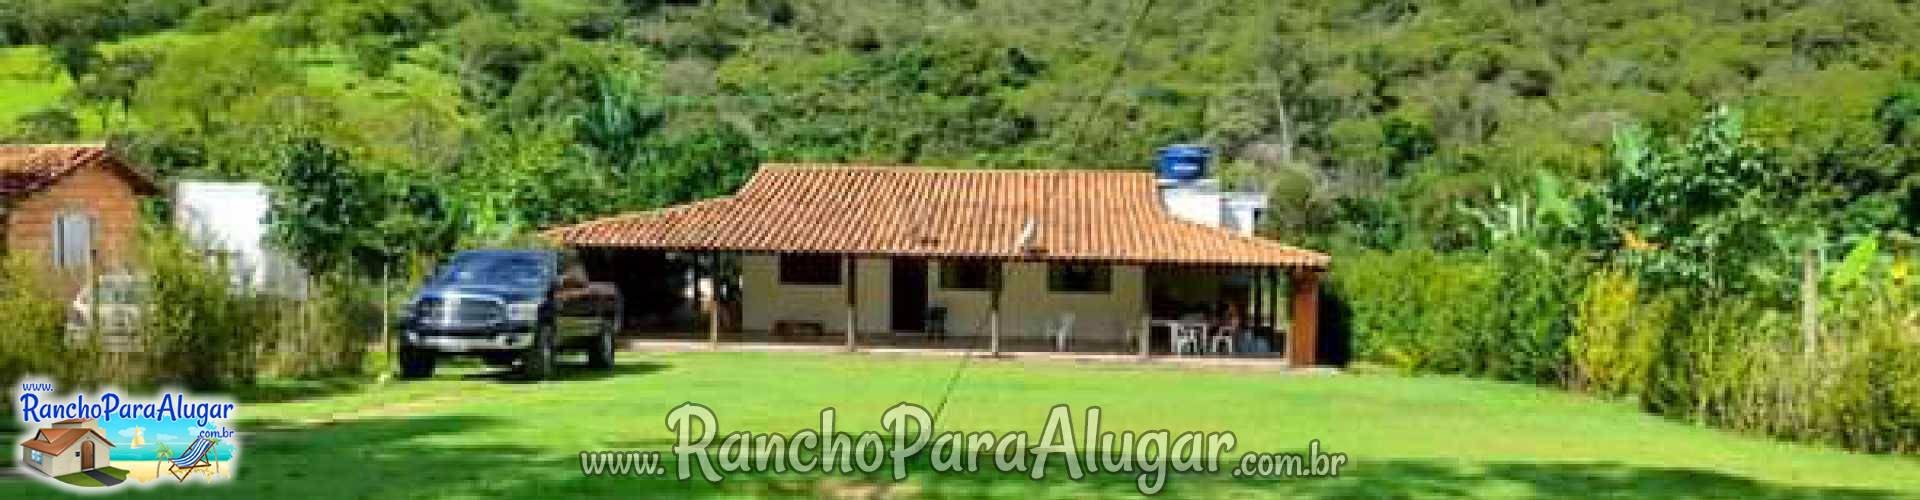 Rancho Para Alugar - Descrição Chácara Mirante para Alugar em